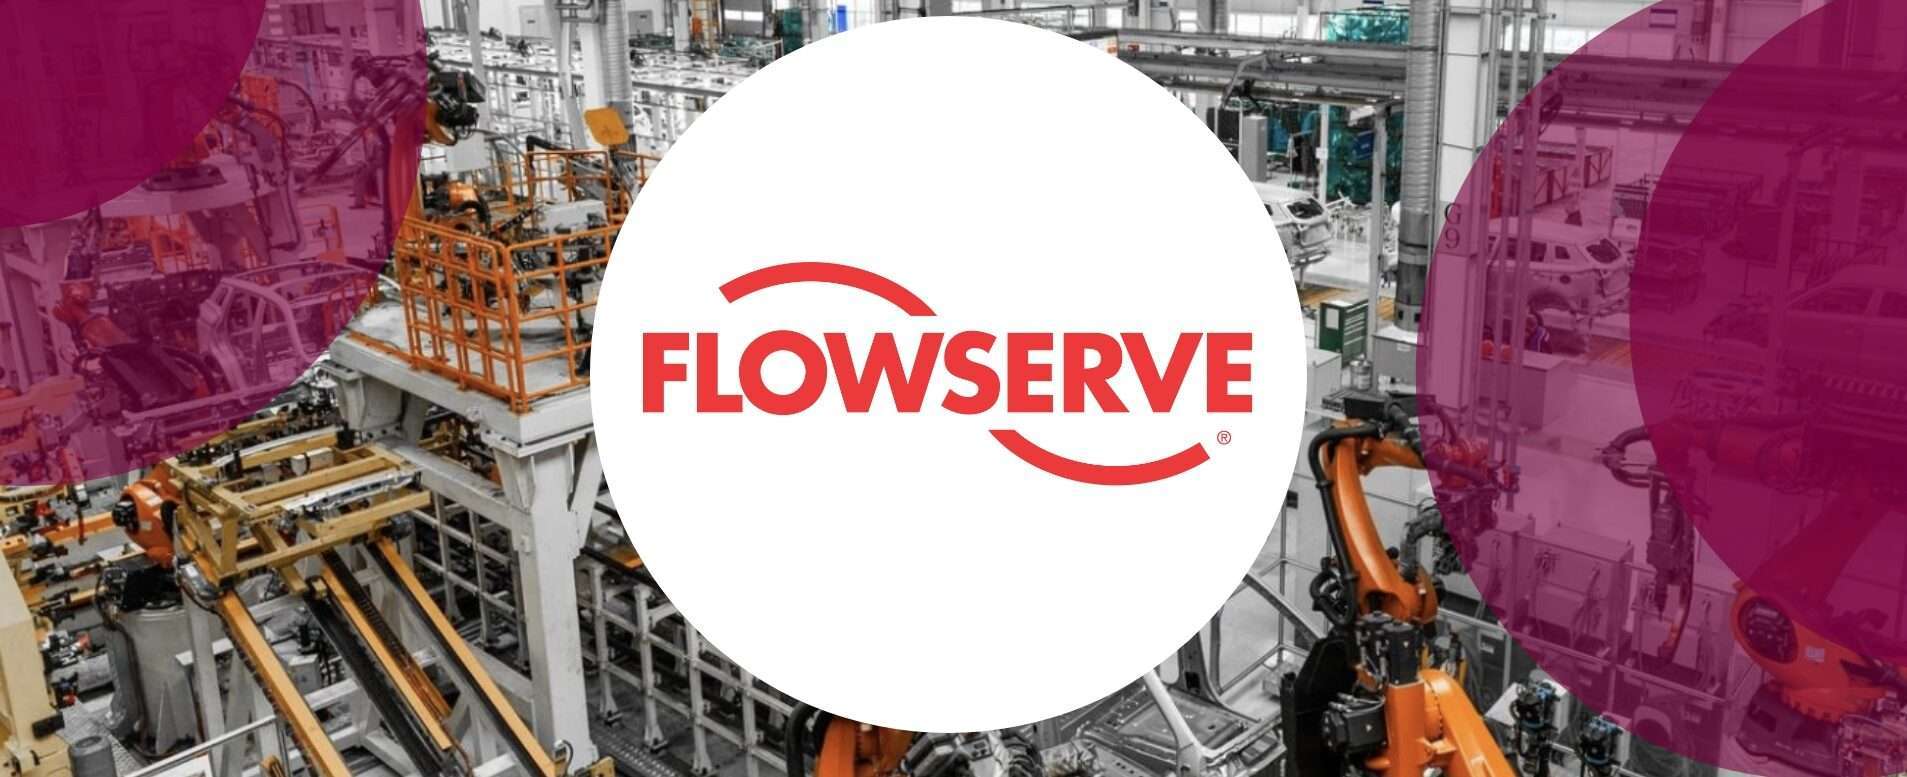 Flowserve Recruitment | Applications Engineer - Junior Associate